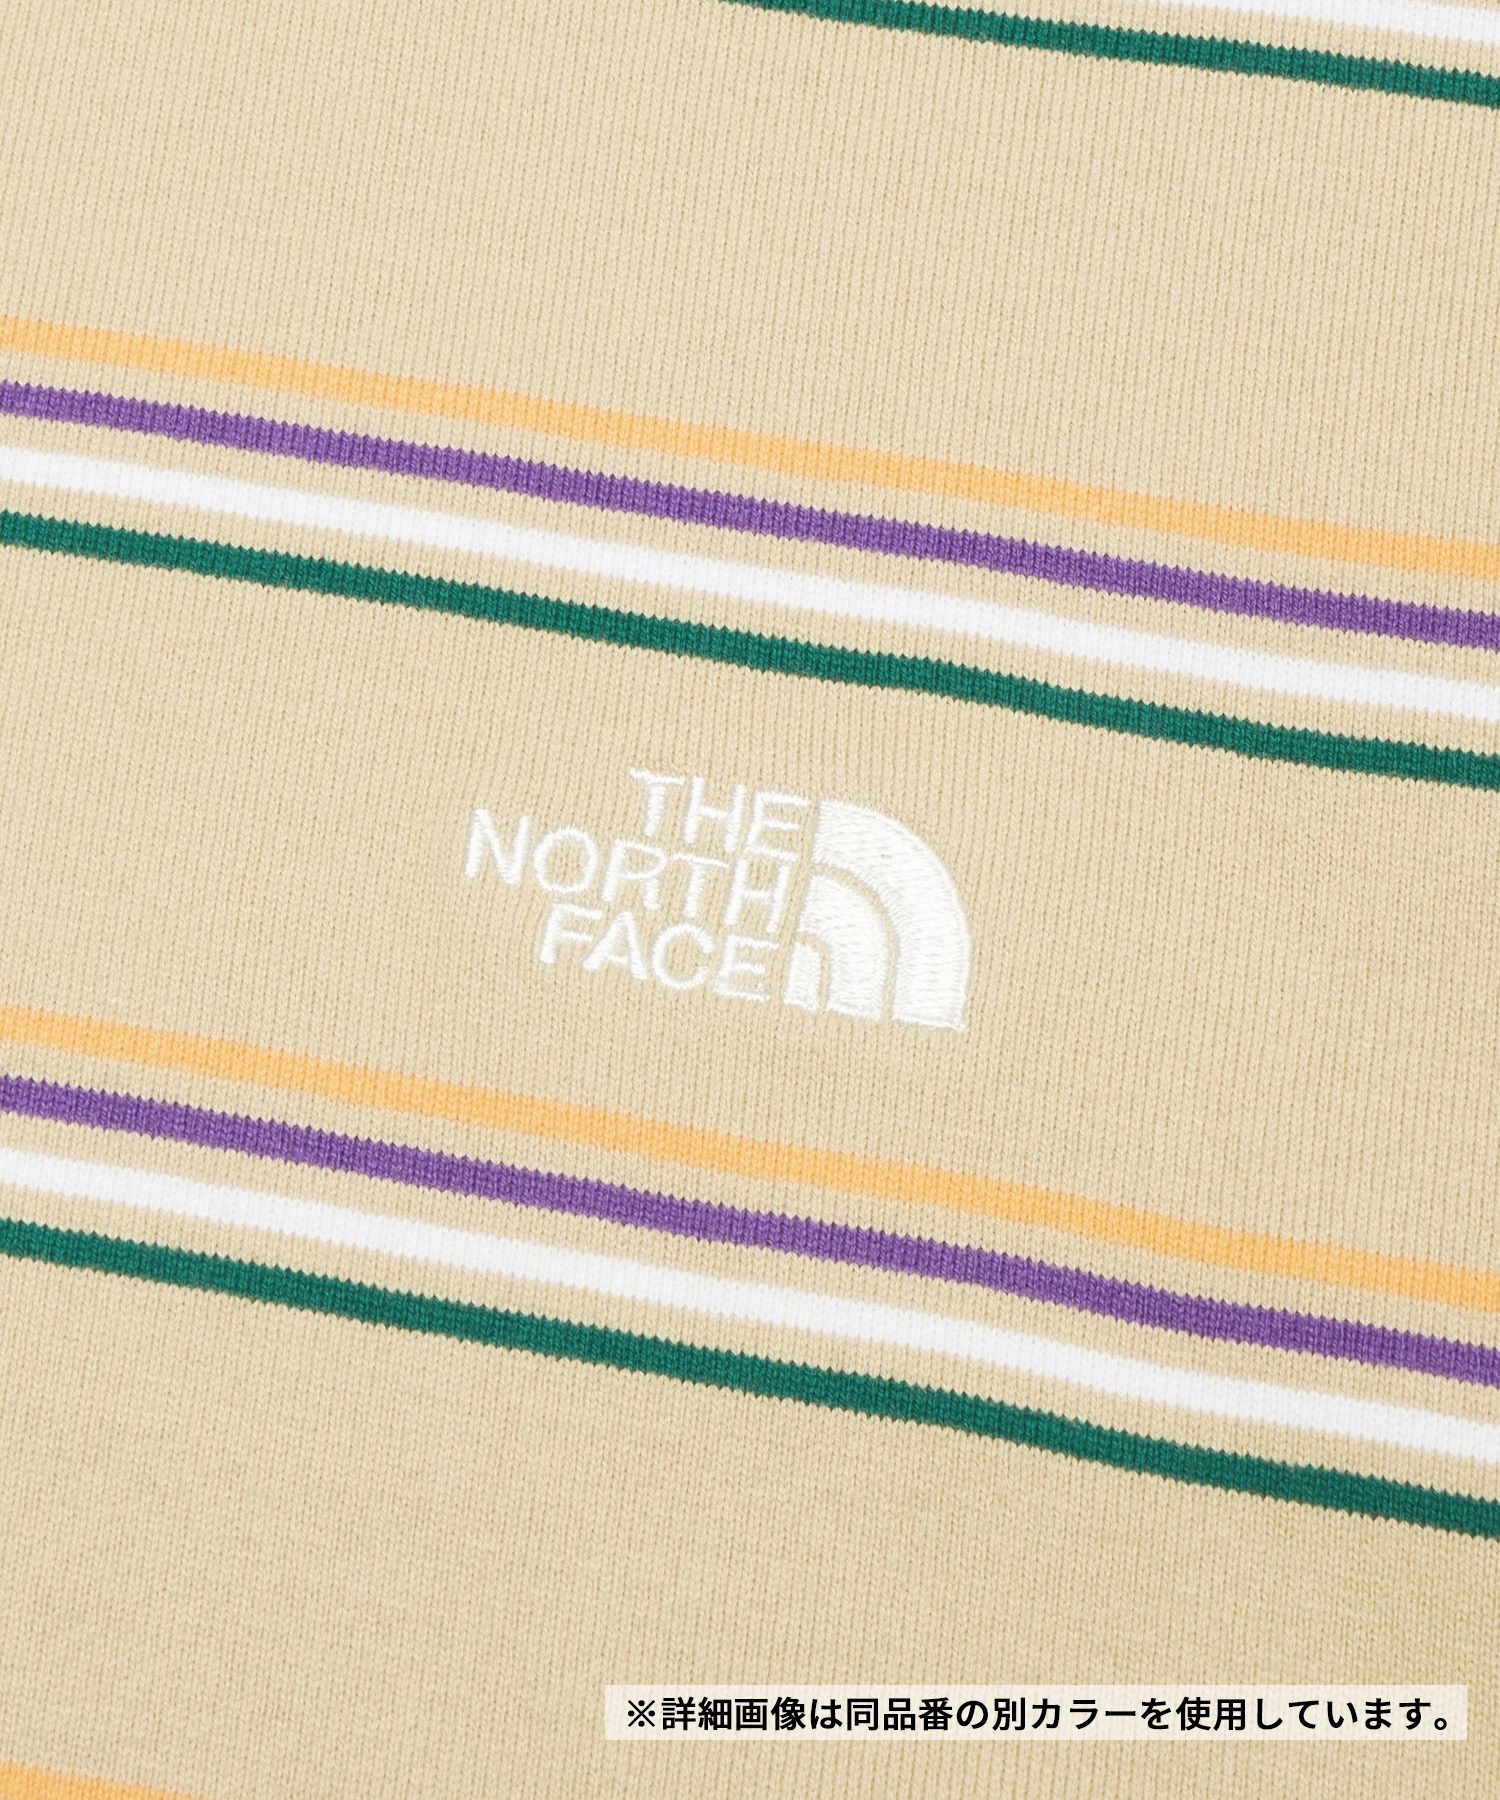 THE NORTH FACE ザ・ノース・フェイス メンズ Tシャツ 半袖 ショートスリーブマルチボーダーティー UVカット NT32455 KW(KW-M)